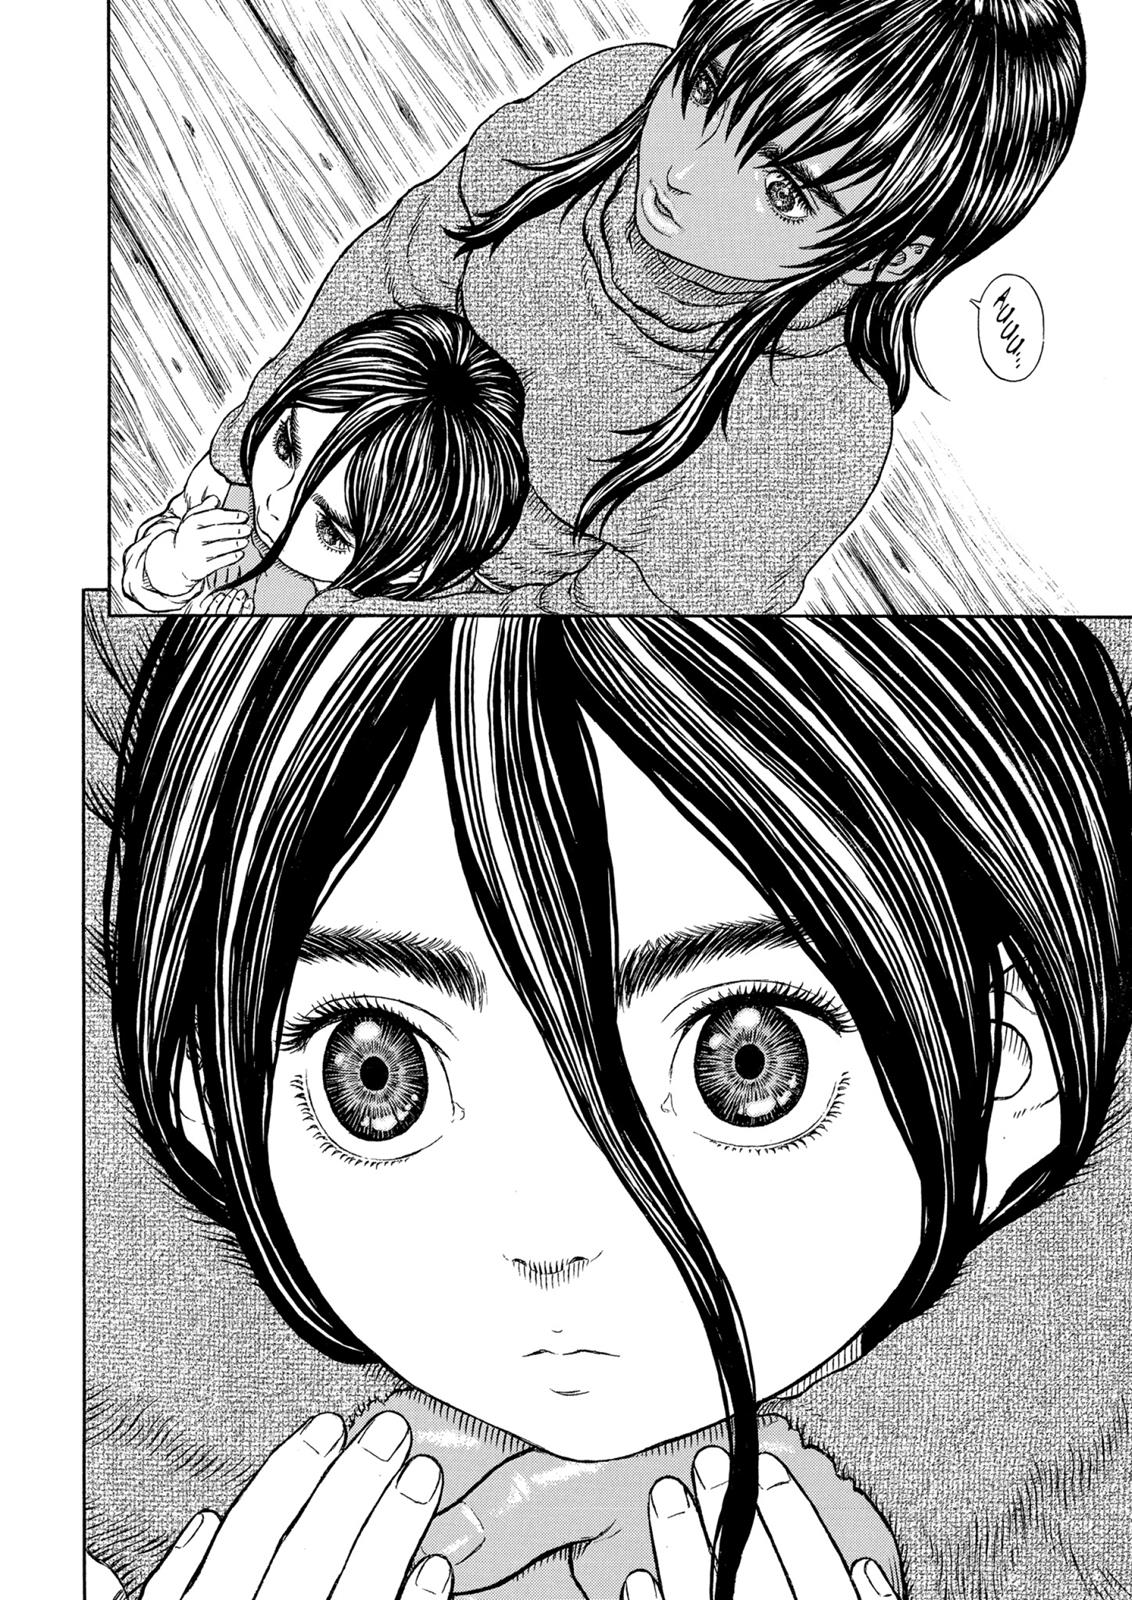 Berserk Manga Chapter 327 image 22